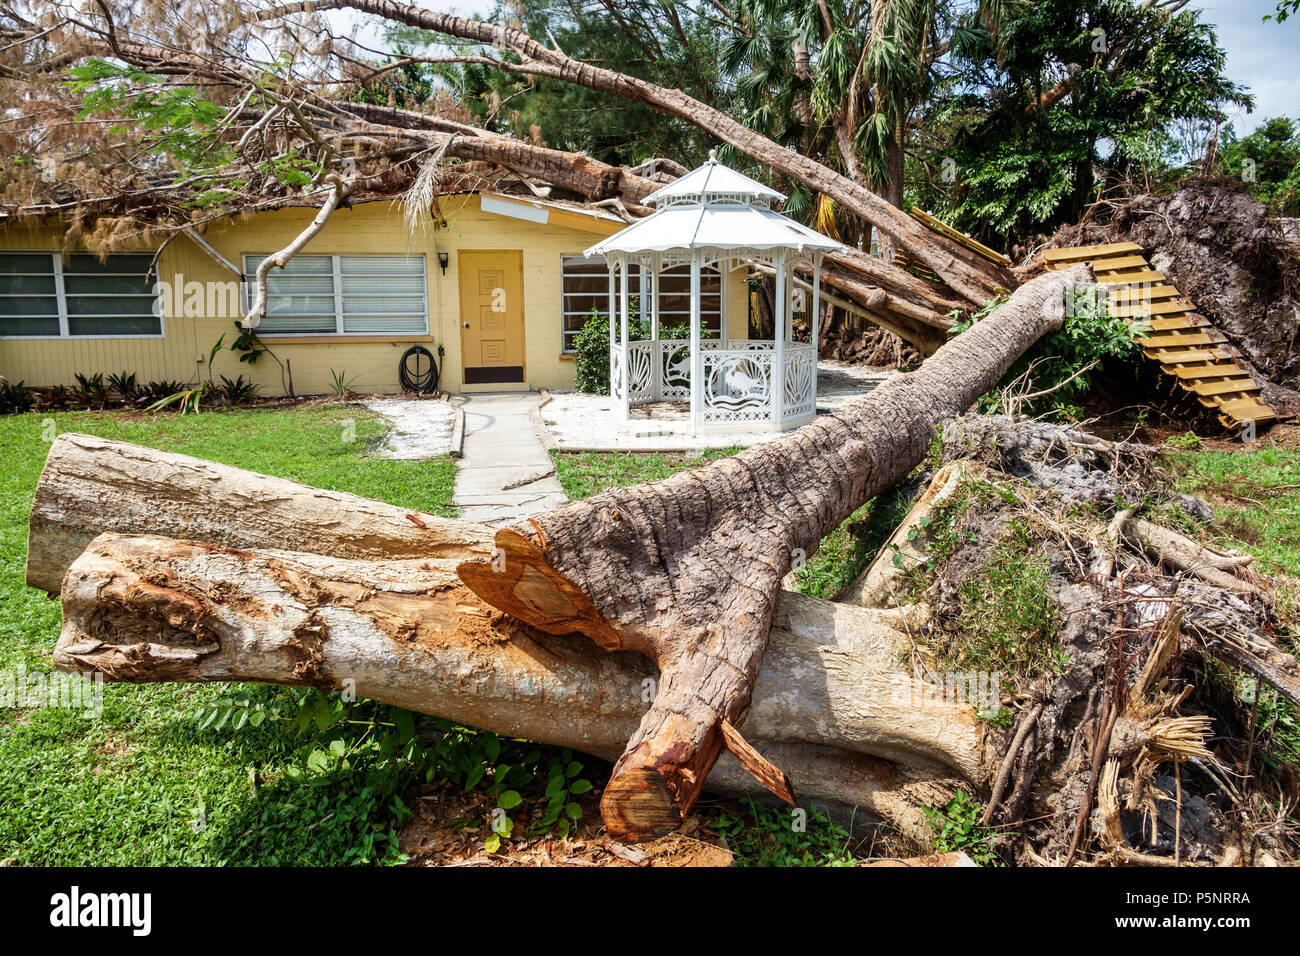 Fort Ft. Myers Florida, casa casas residencia, daños de tormenta destrucción secuelas, árbol caído huracán Irma, techo dañado, tronco de árbol, FL17092 Foto de stock